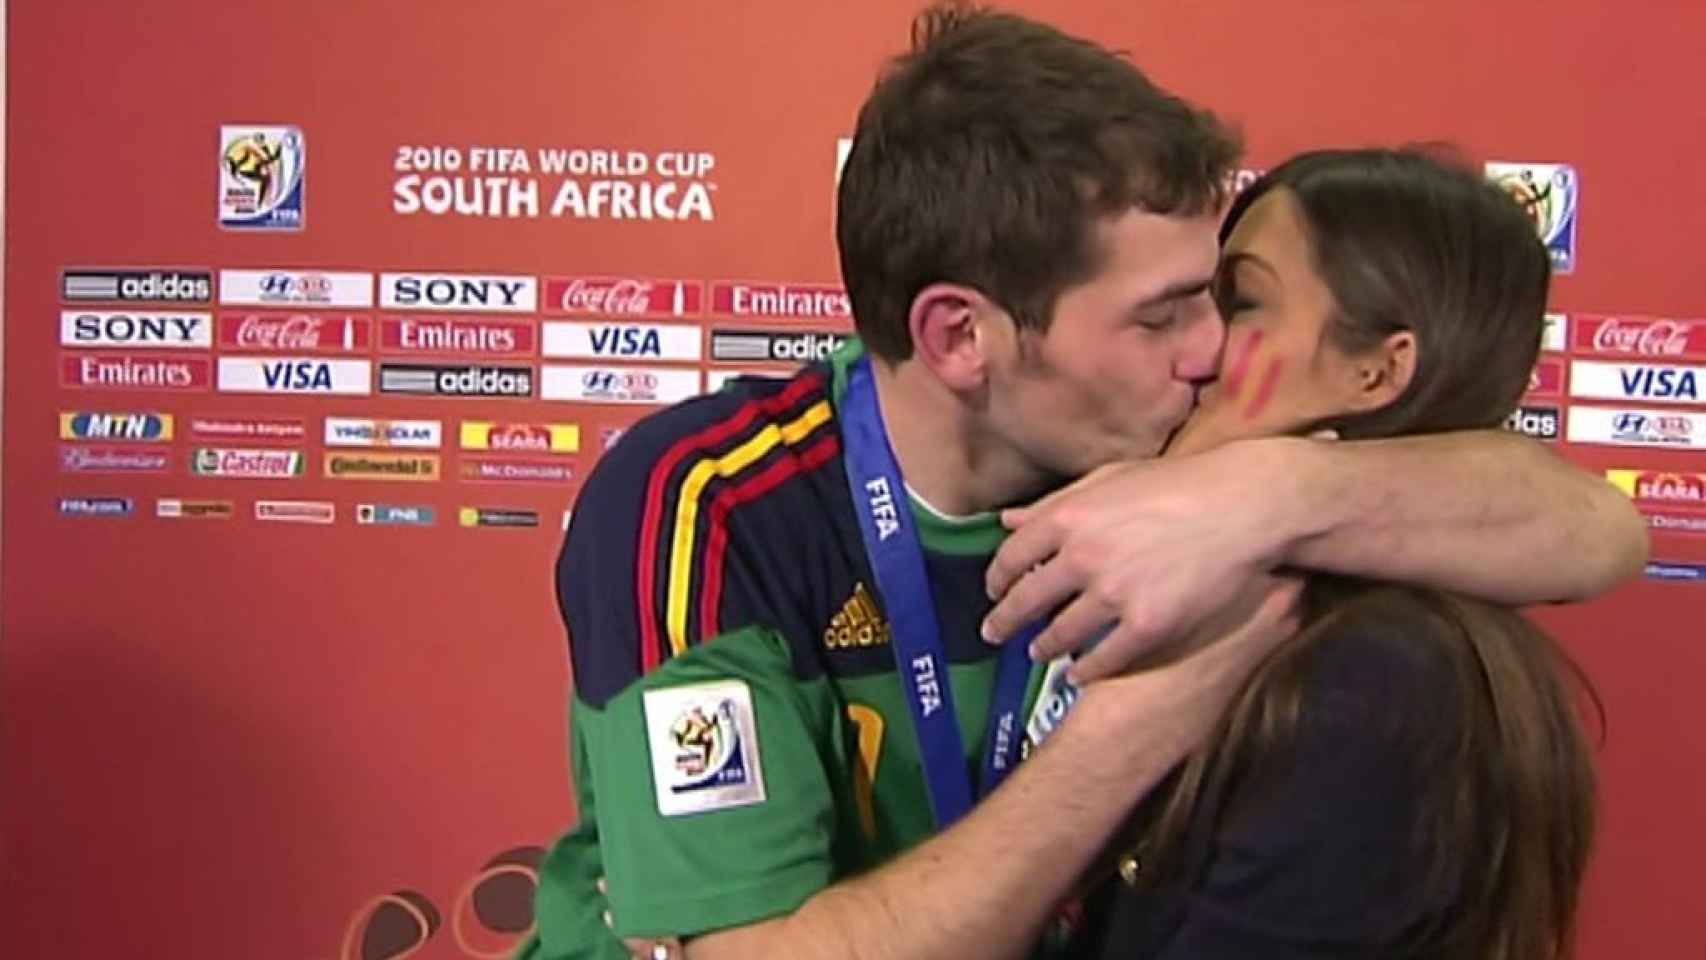 La audiencia nunca olvidará este beso en directo entre los dos al ganar el Mundial de Sudáfrica.